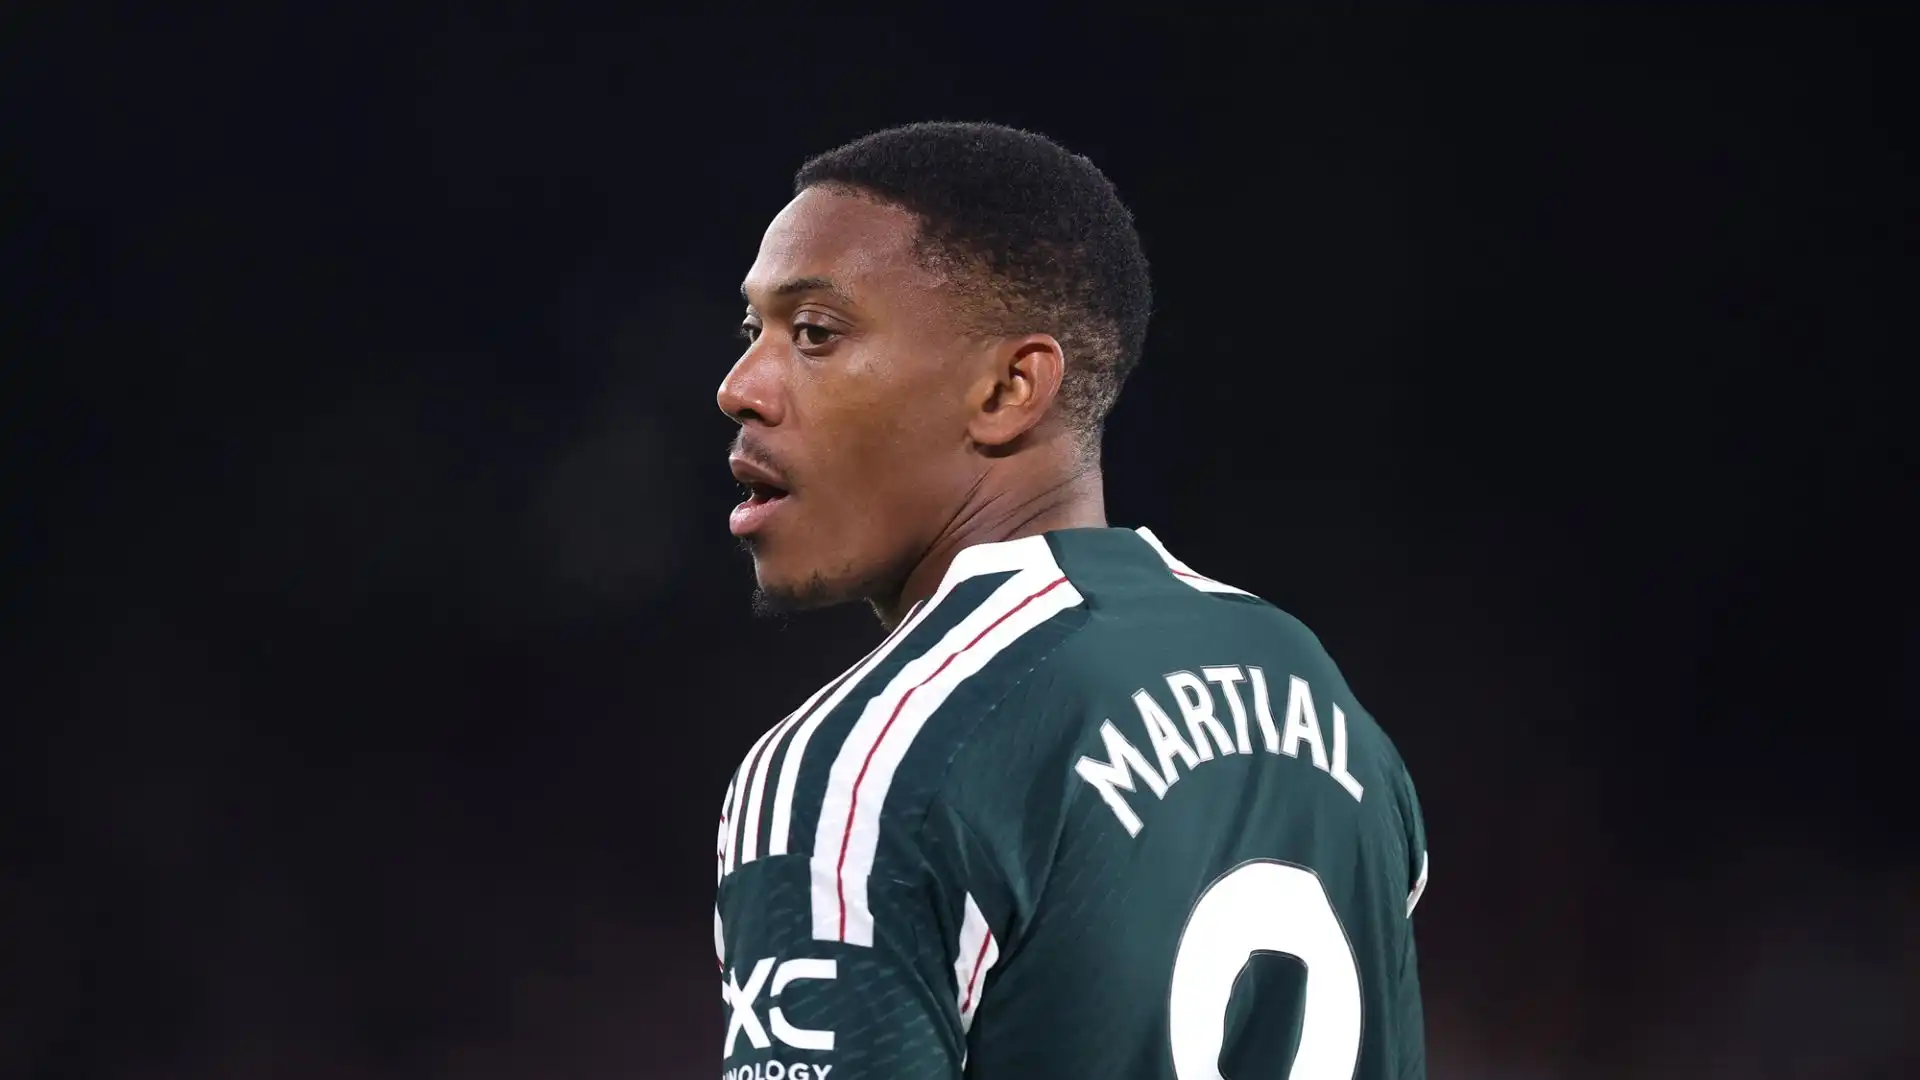 Per l'estate, oltre a Taremi l'Inter sta valutando un altro nome: Anthony Martial